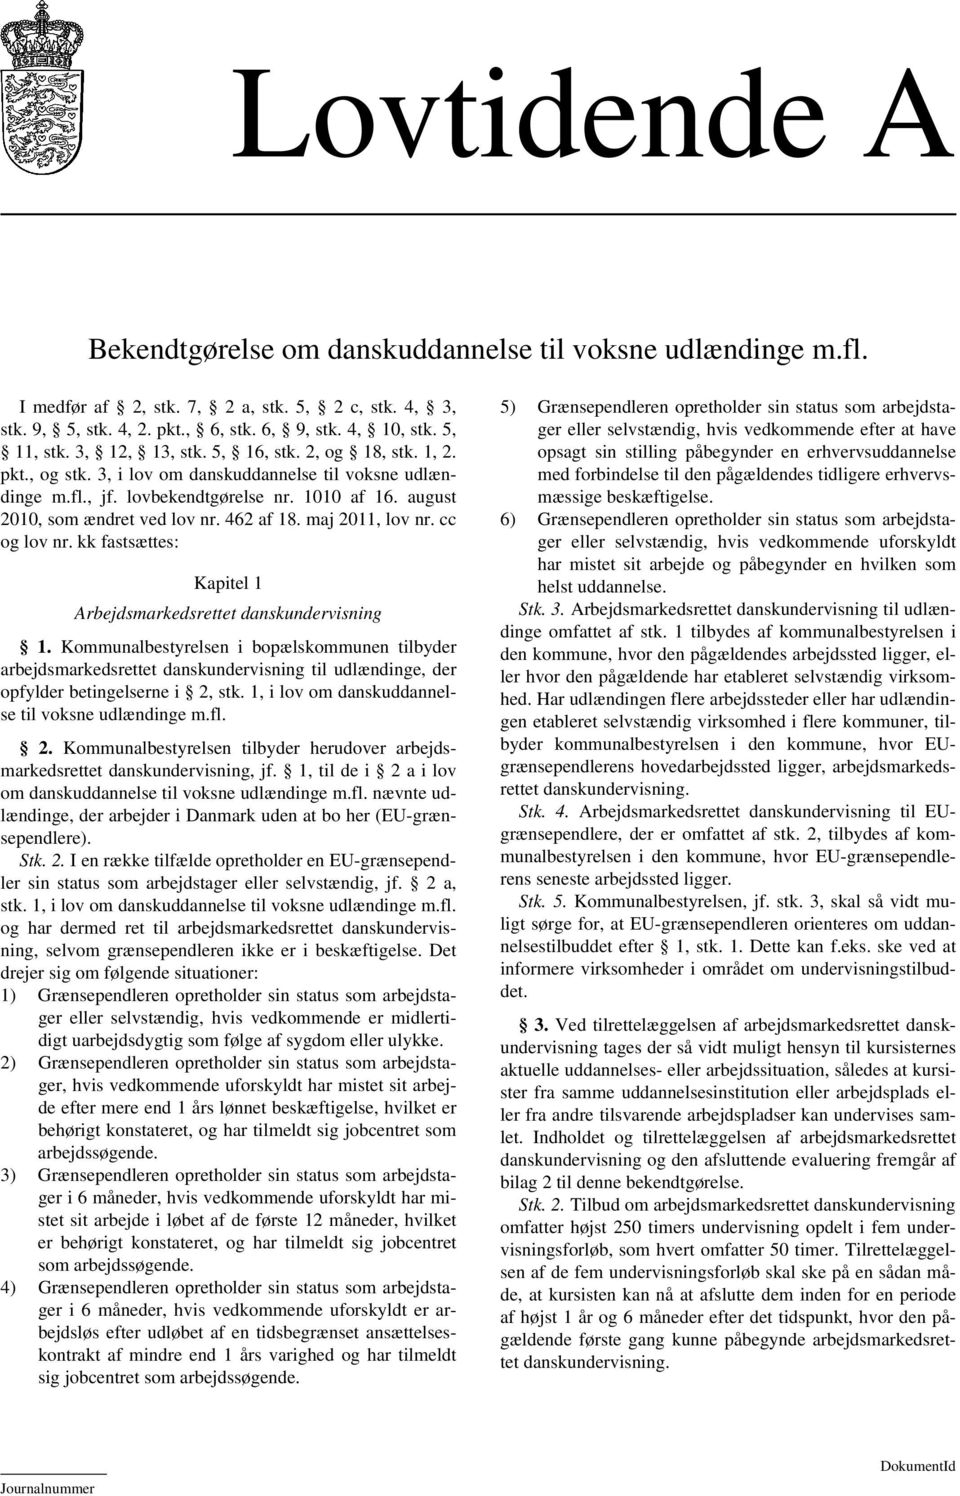 462 af 18. maj 2011, lov nr. cc og lov nr. kk fastsættes: Kapitel 1 Arbejdsmarkedsrettet danskundervisning 1.